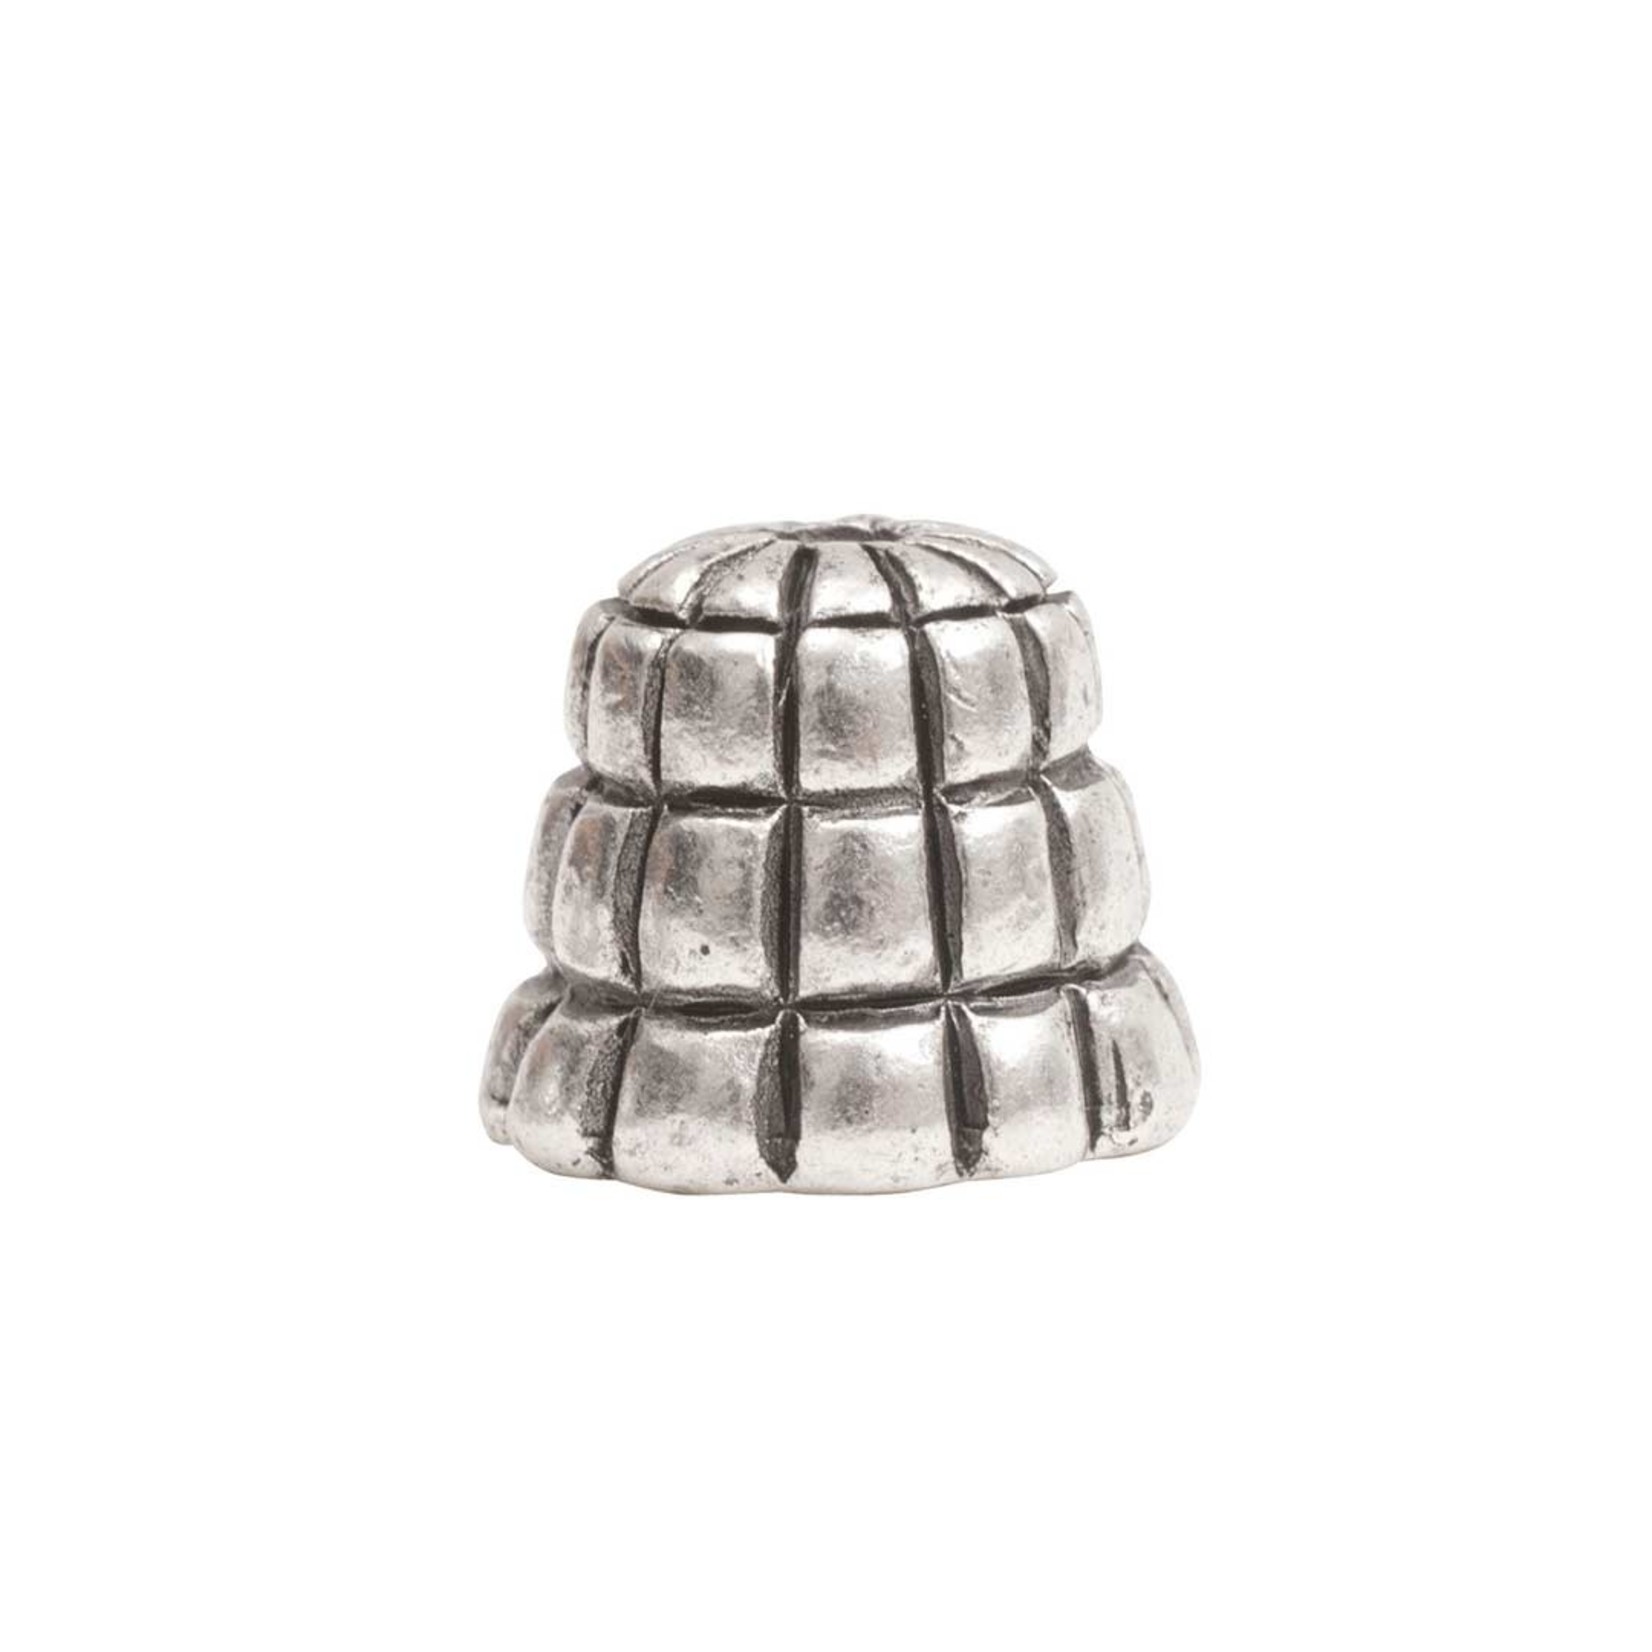 Nunn Design Sea Hive 9mm Bead Cap - Silver Plated